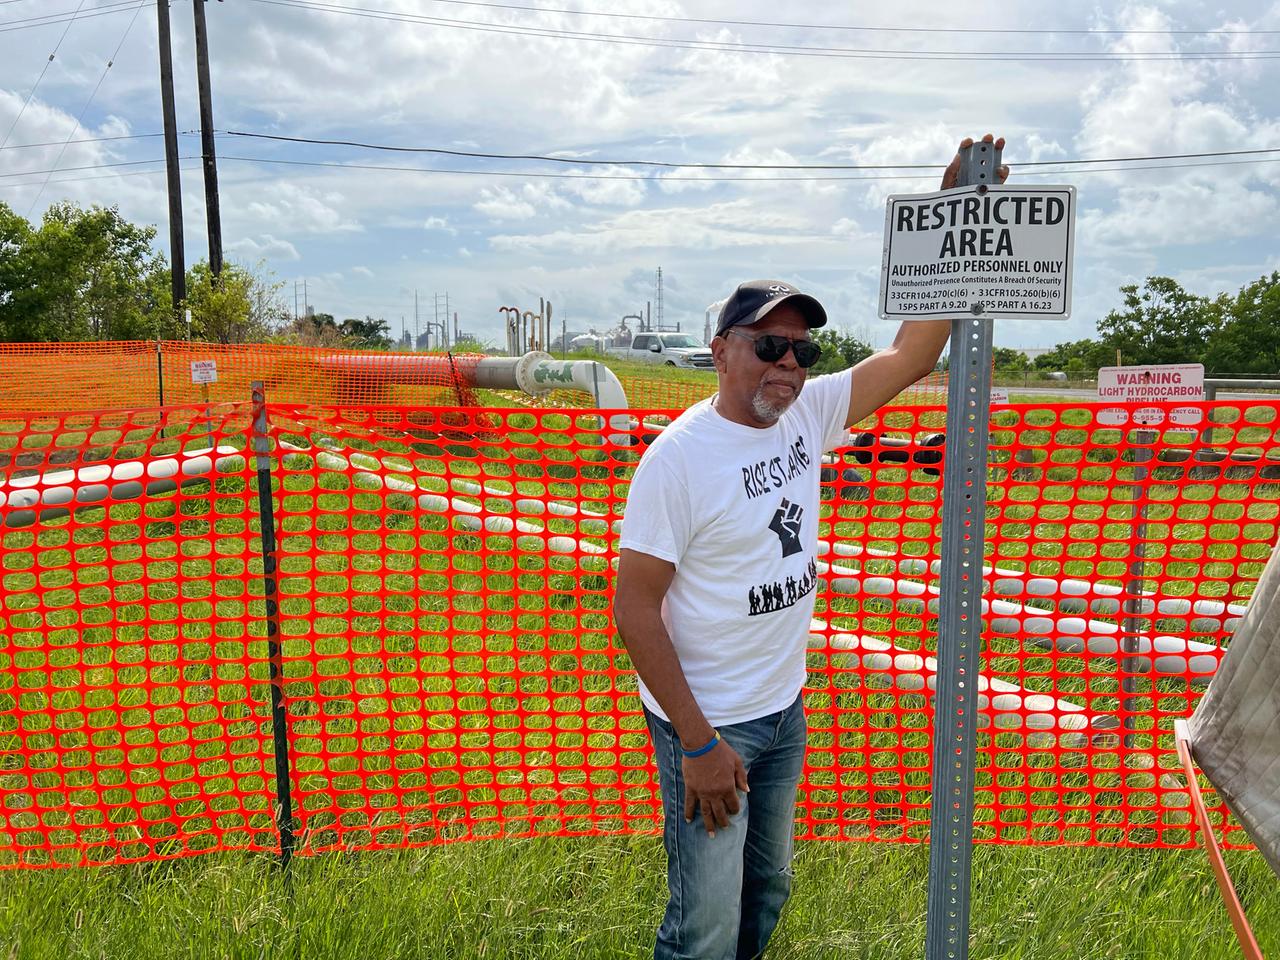 Ein Mann mit Käppi, Sonnenbrille und weißem T-Shirt steht an einem roten Zaun vor einem Schild auf dem "Restricted Area" steht.